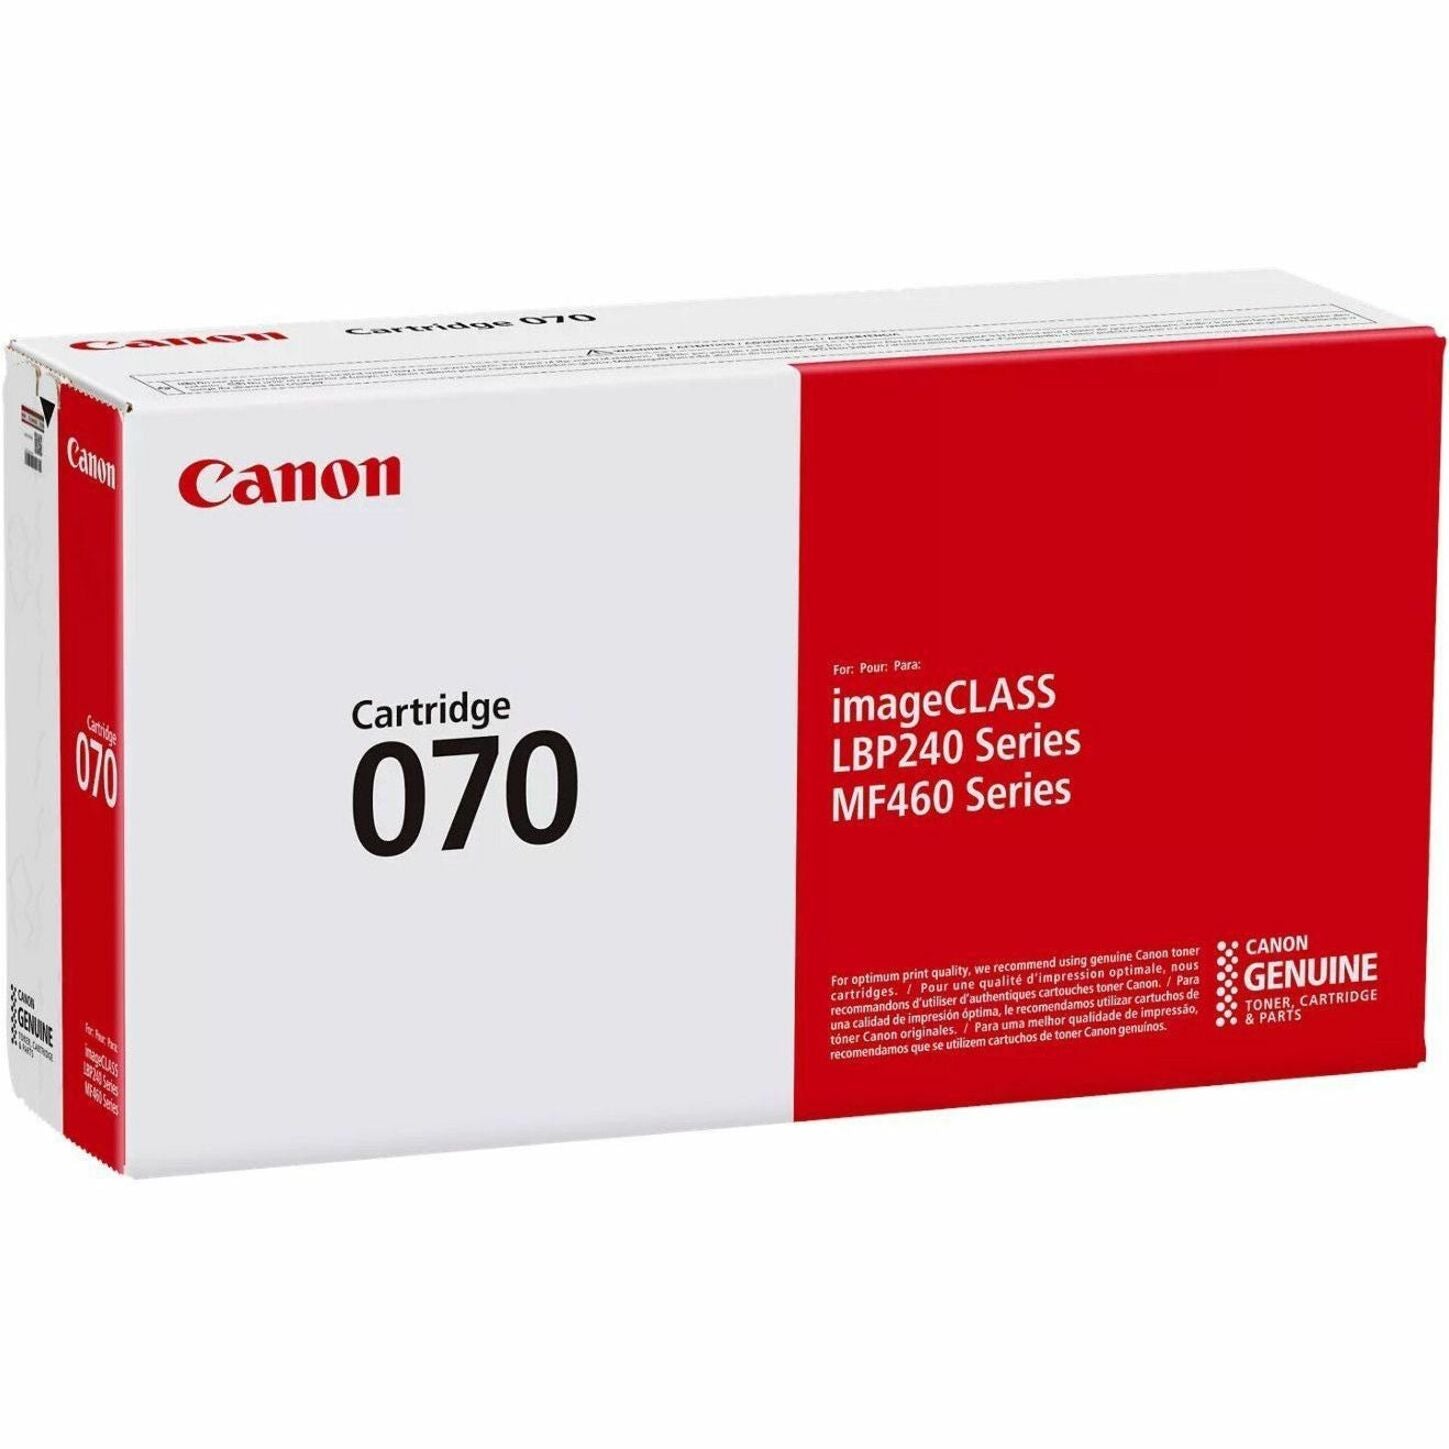 Canon 5639C001 070 Black Toner Cartridge - Original, 3000 Pages